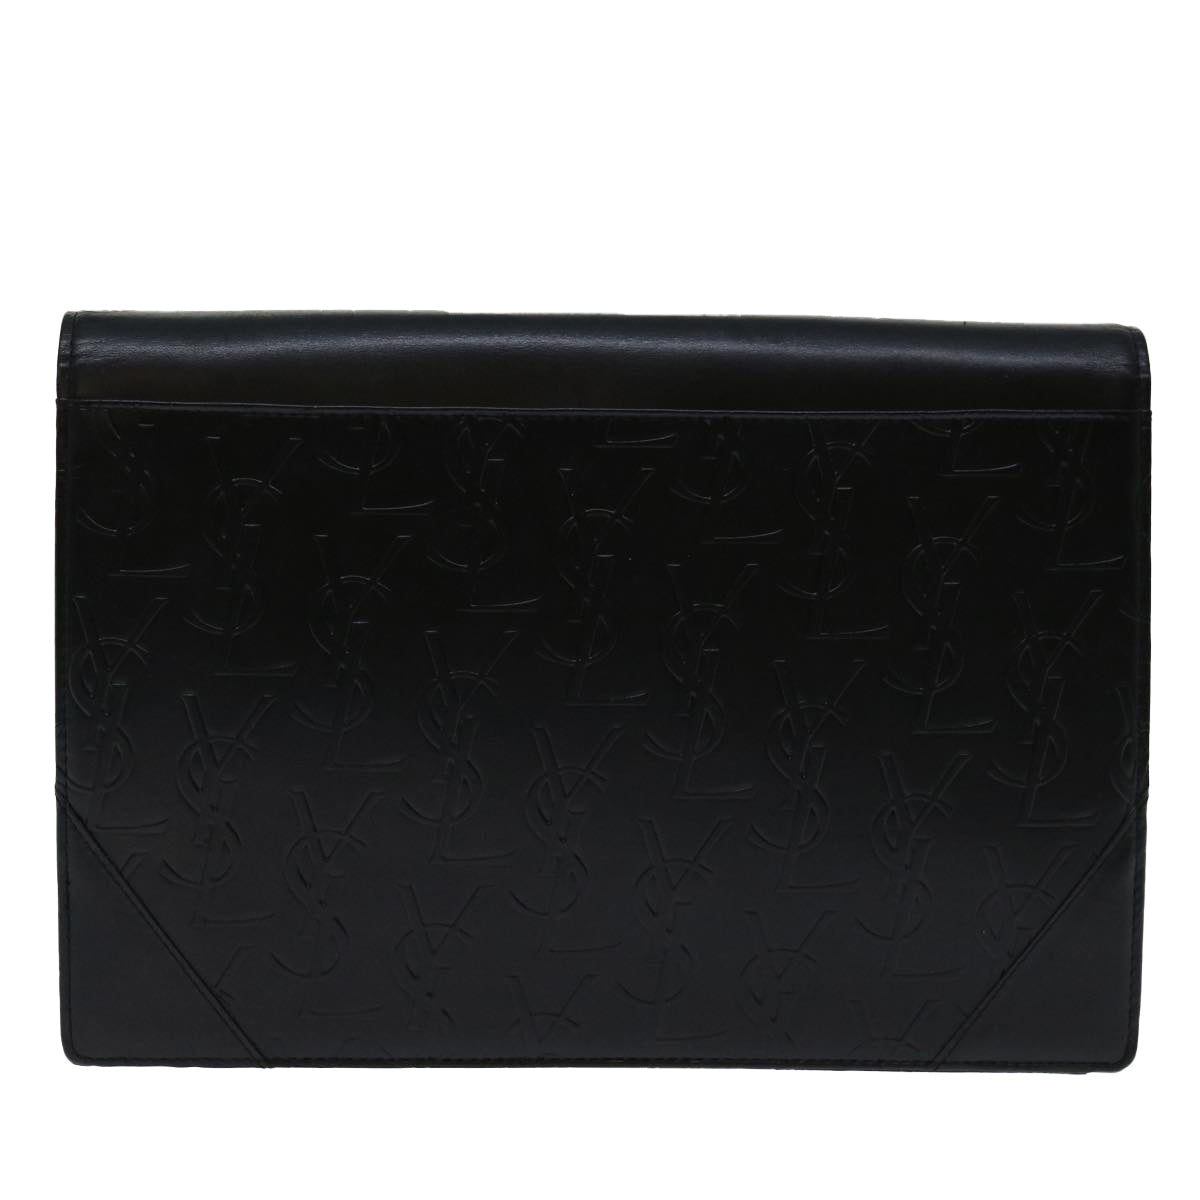 SAINT LAURENT Clutch Bag Leather Black Auth ep3667 - 0